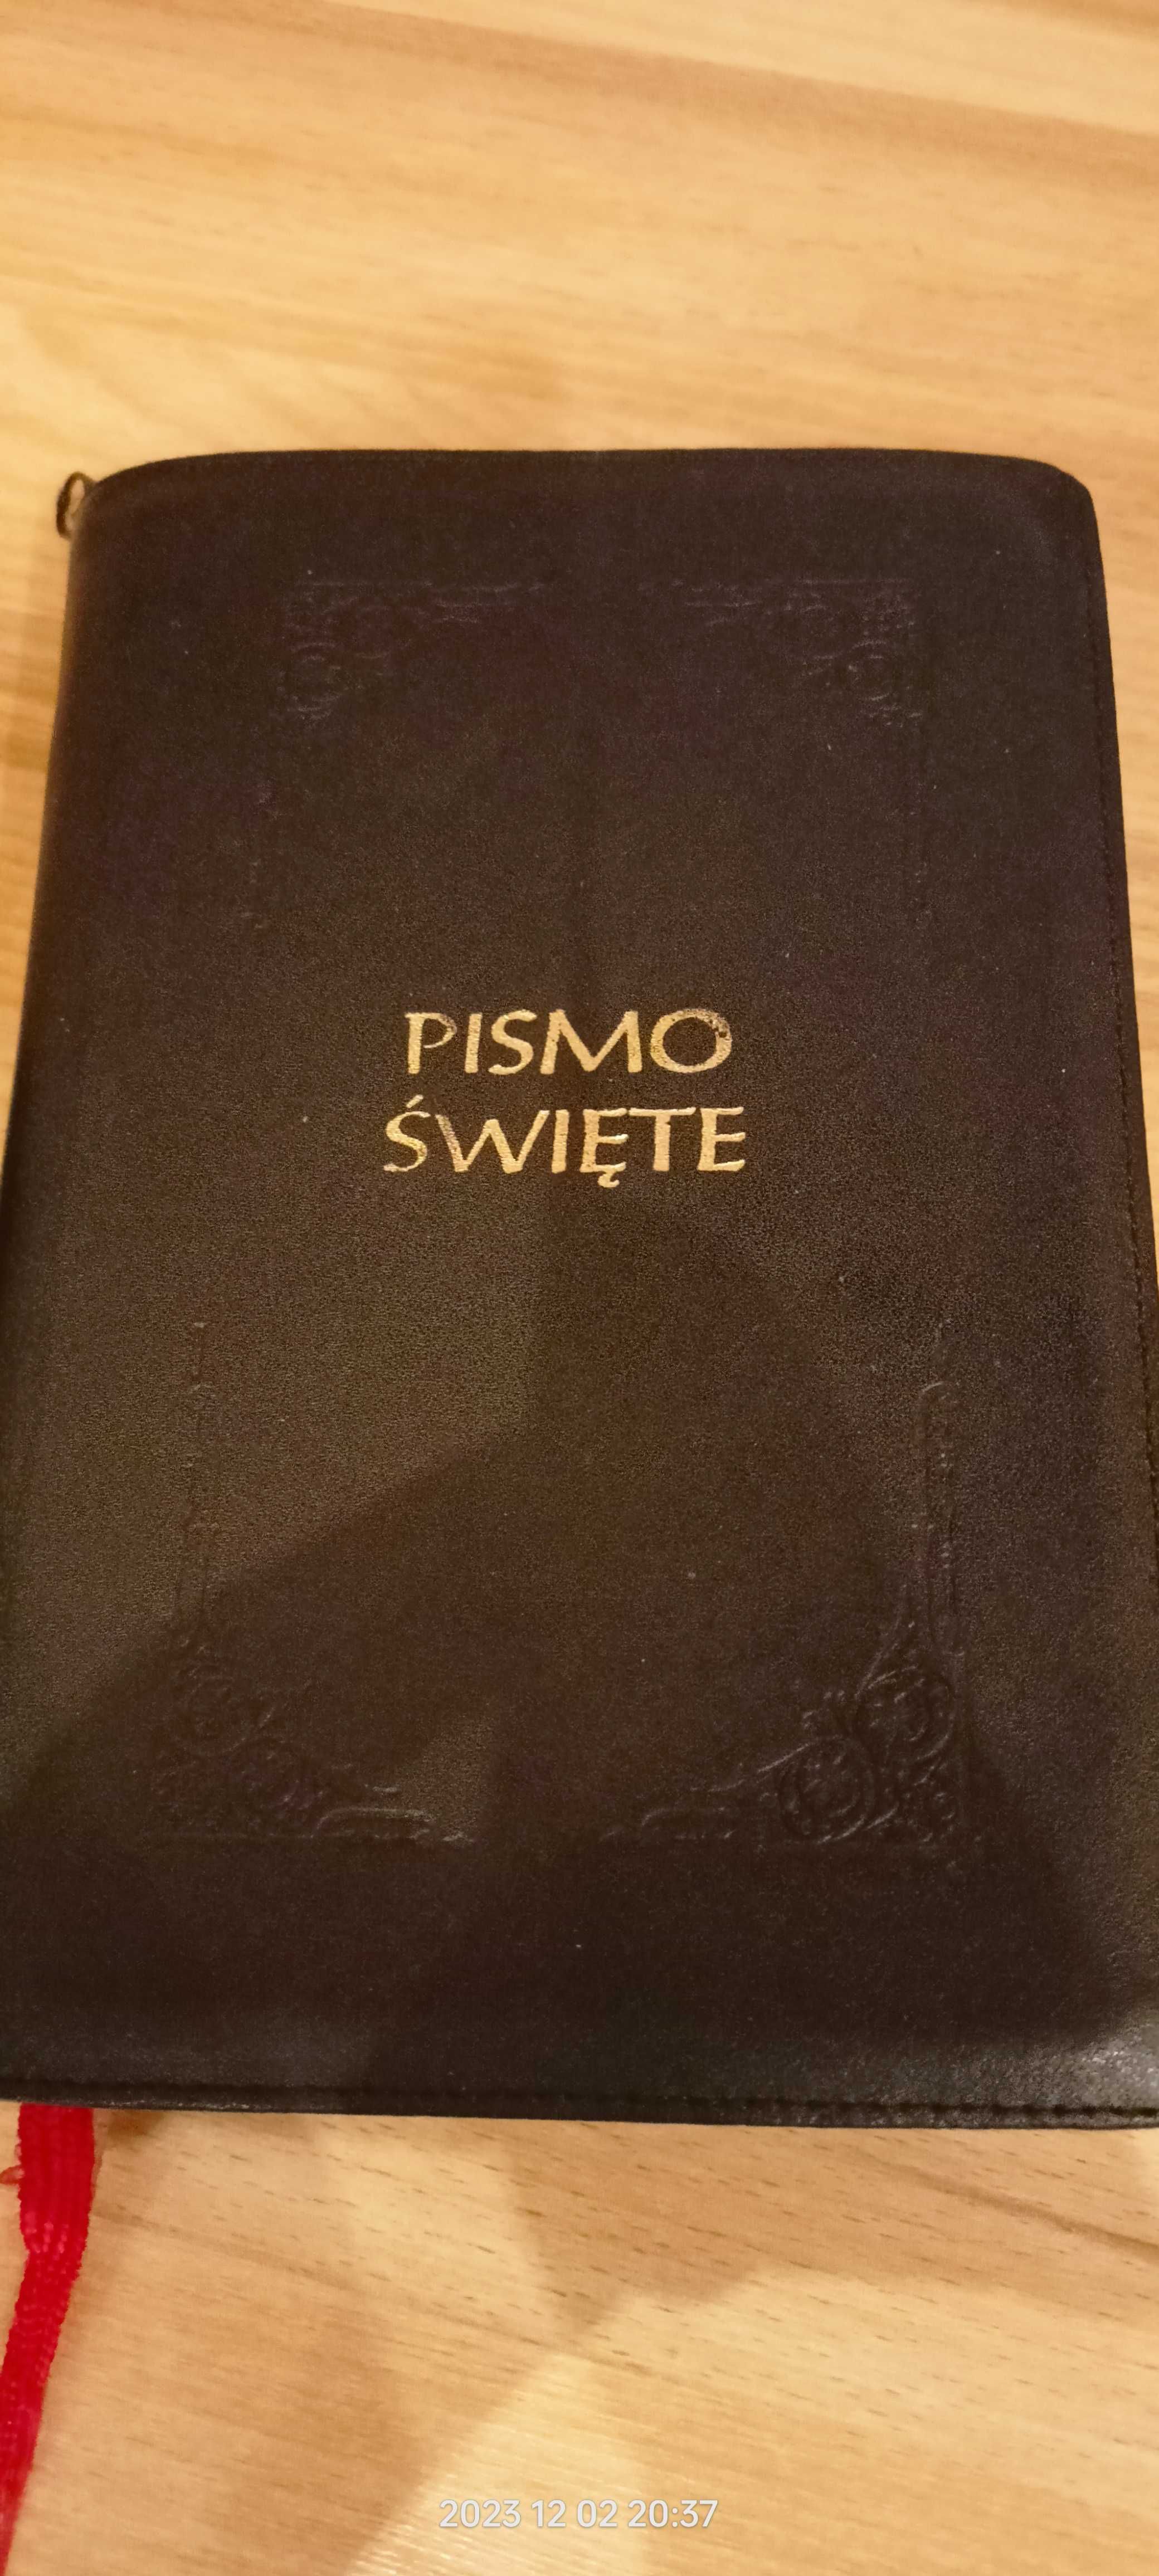 Sprzedam używaną Biblię Gdańską, tłumaczenie 1632 r.